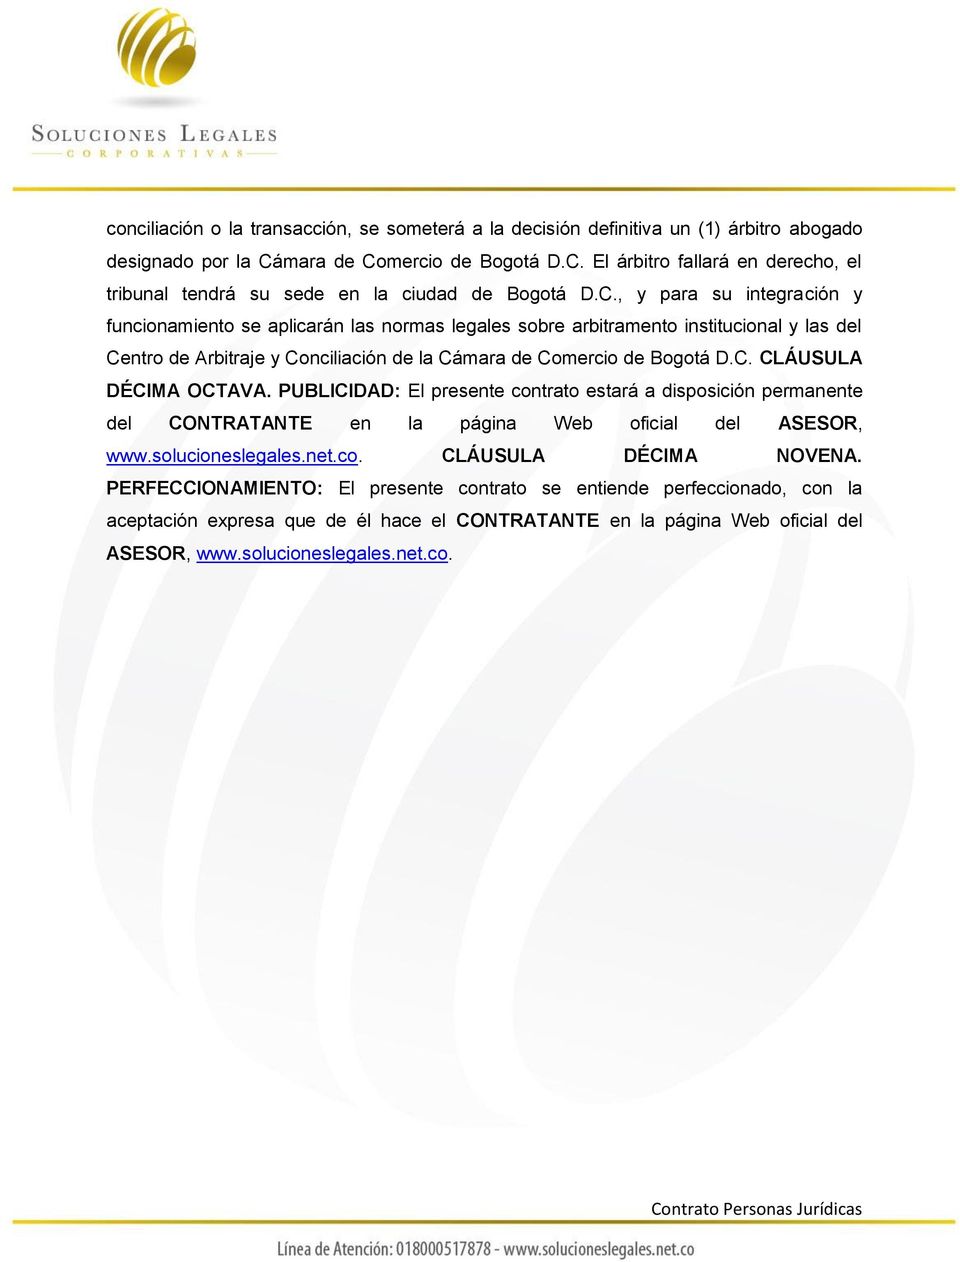 PUBLICIDAD: El presente contrato estará a disposición permanente del CONTRATANTE en la página Web oficial del ASESOR, www.solucioneslegales.net.co. CLÁUSULA DÉCIMA NOVENA.